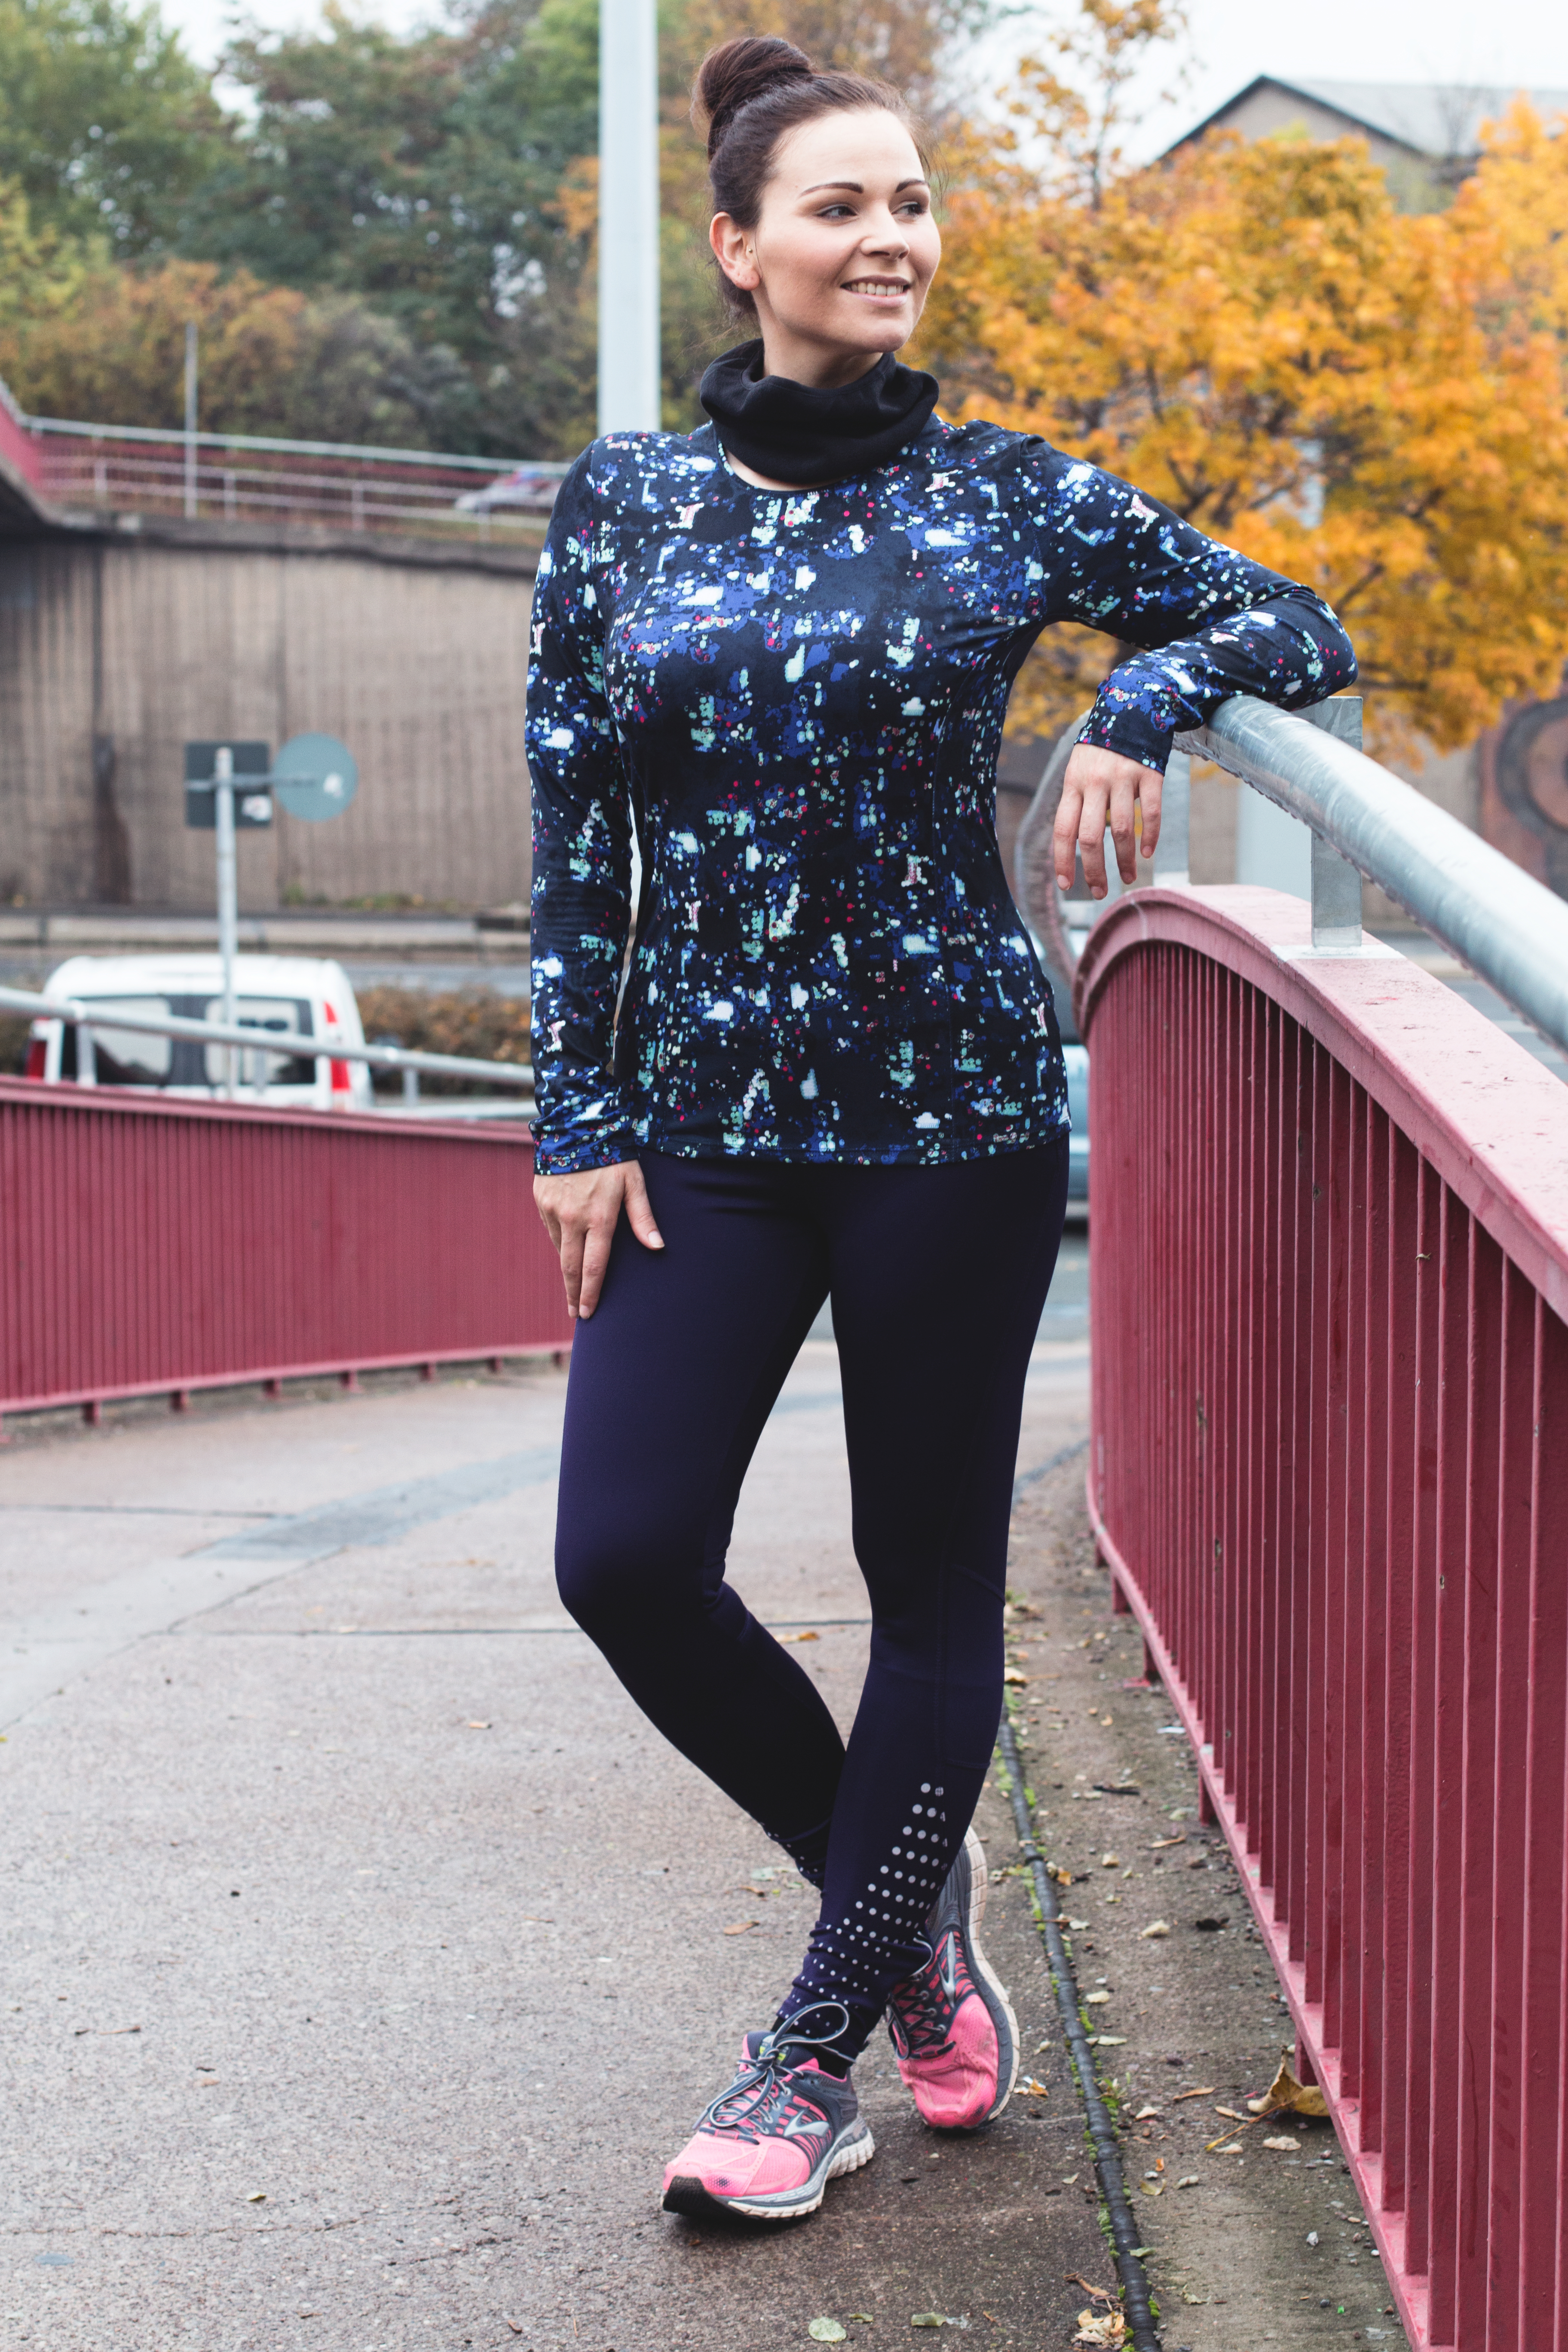 Laufbekleidung: 2 Outfits zum Joggen im Winter - Kleidermaedchen Modeblog